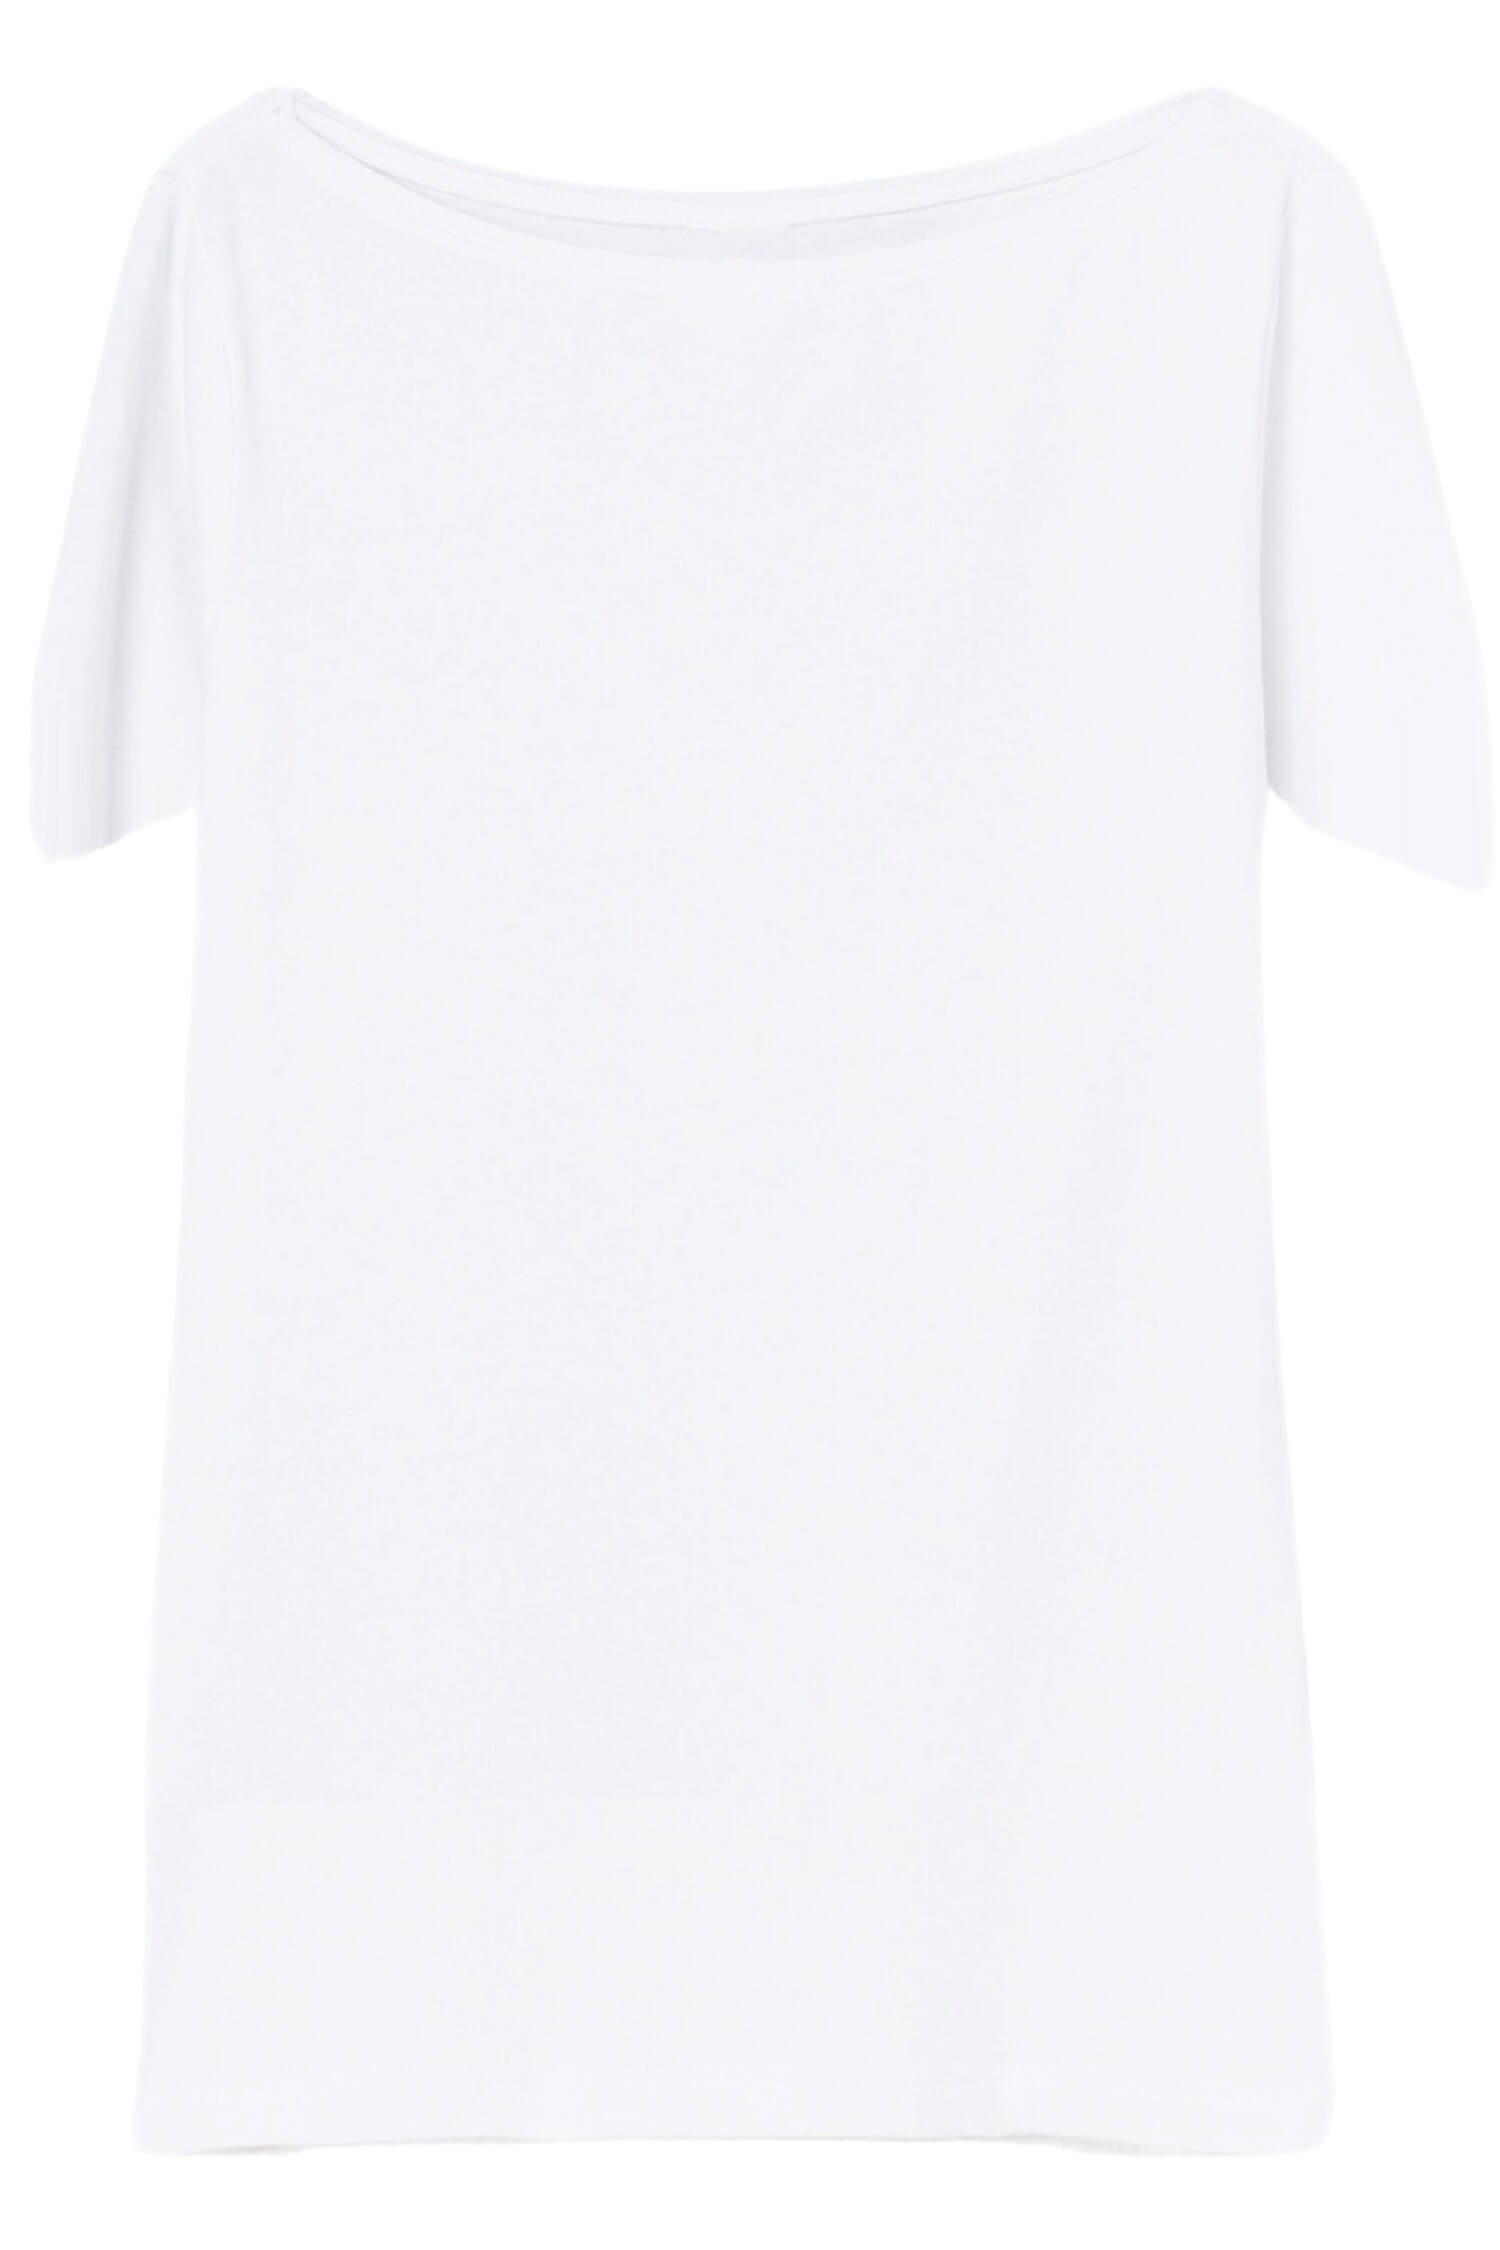 Danica dámské tričko s krátkým rukávem TSK-1005 bílá XXL